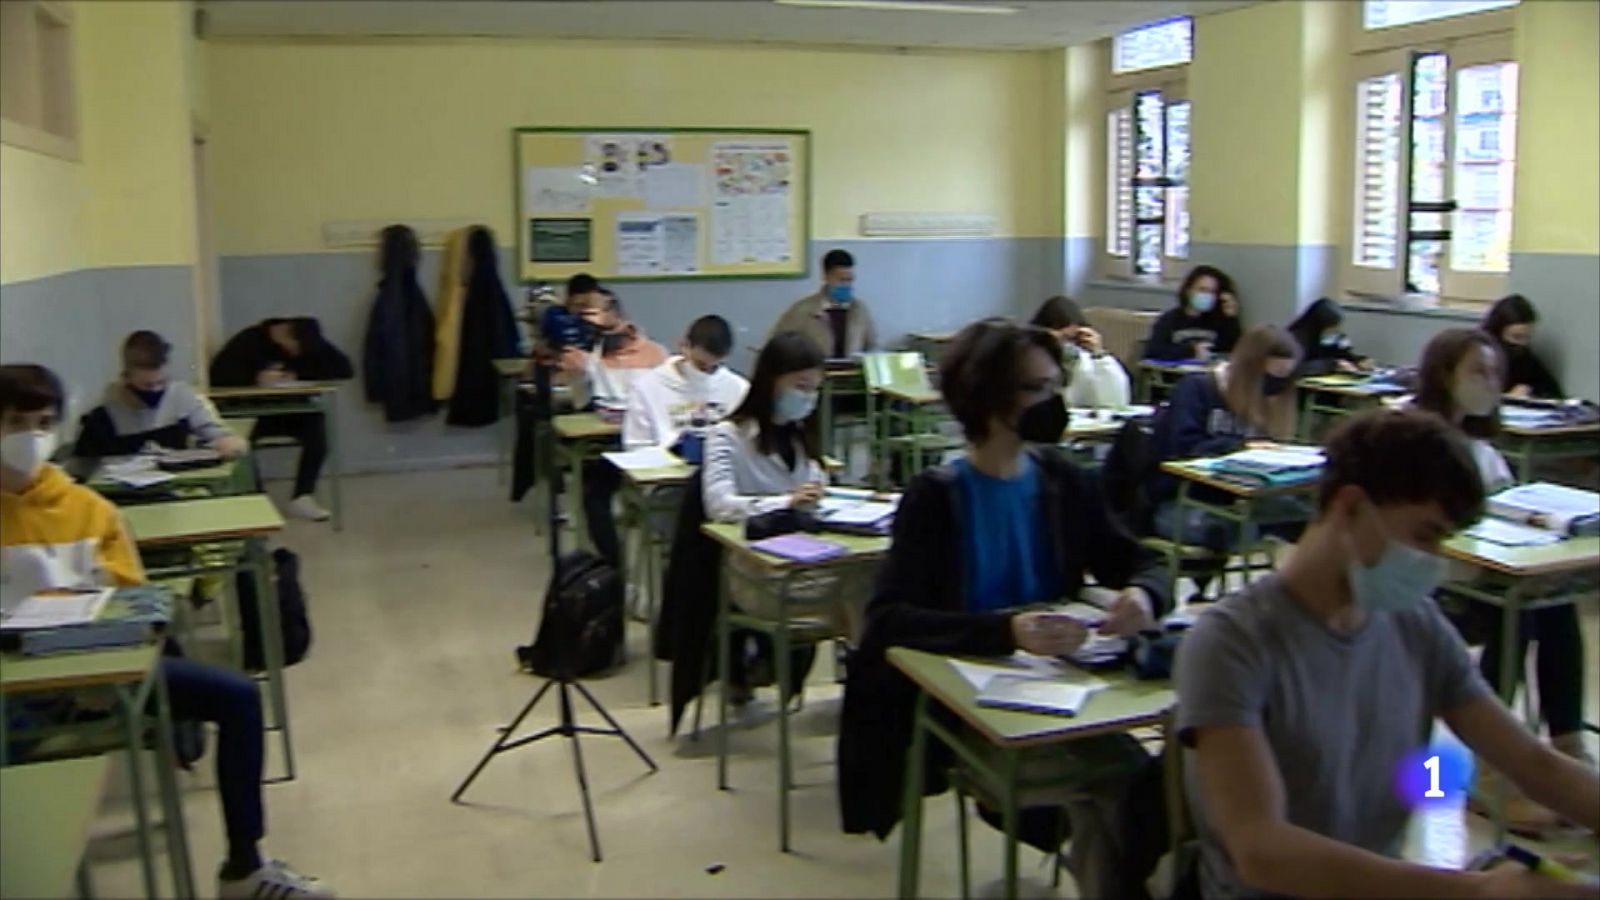 Investigadores zaragozanos han comprobado cómo seguridad y confort en las aulas es posible - RTVE.es